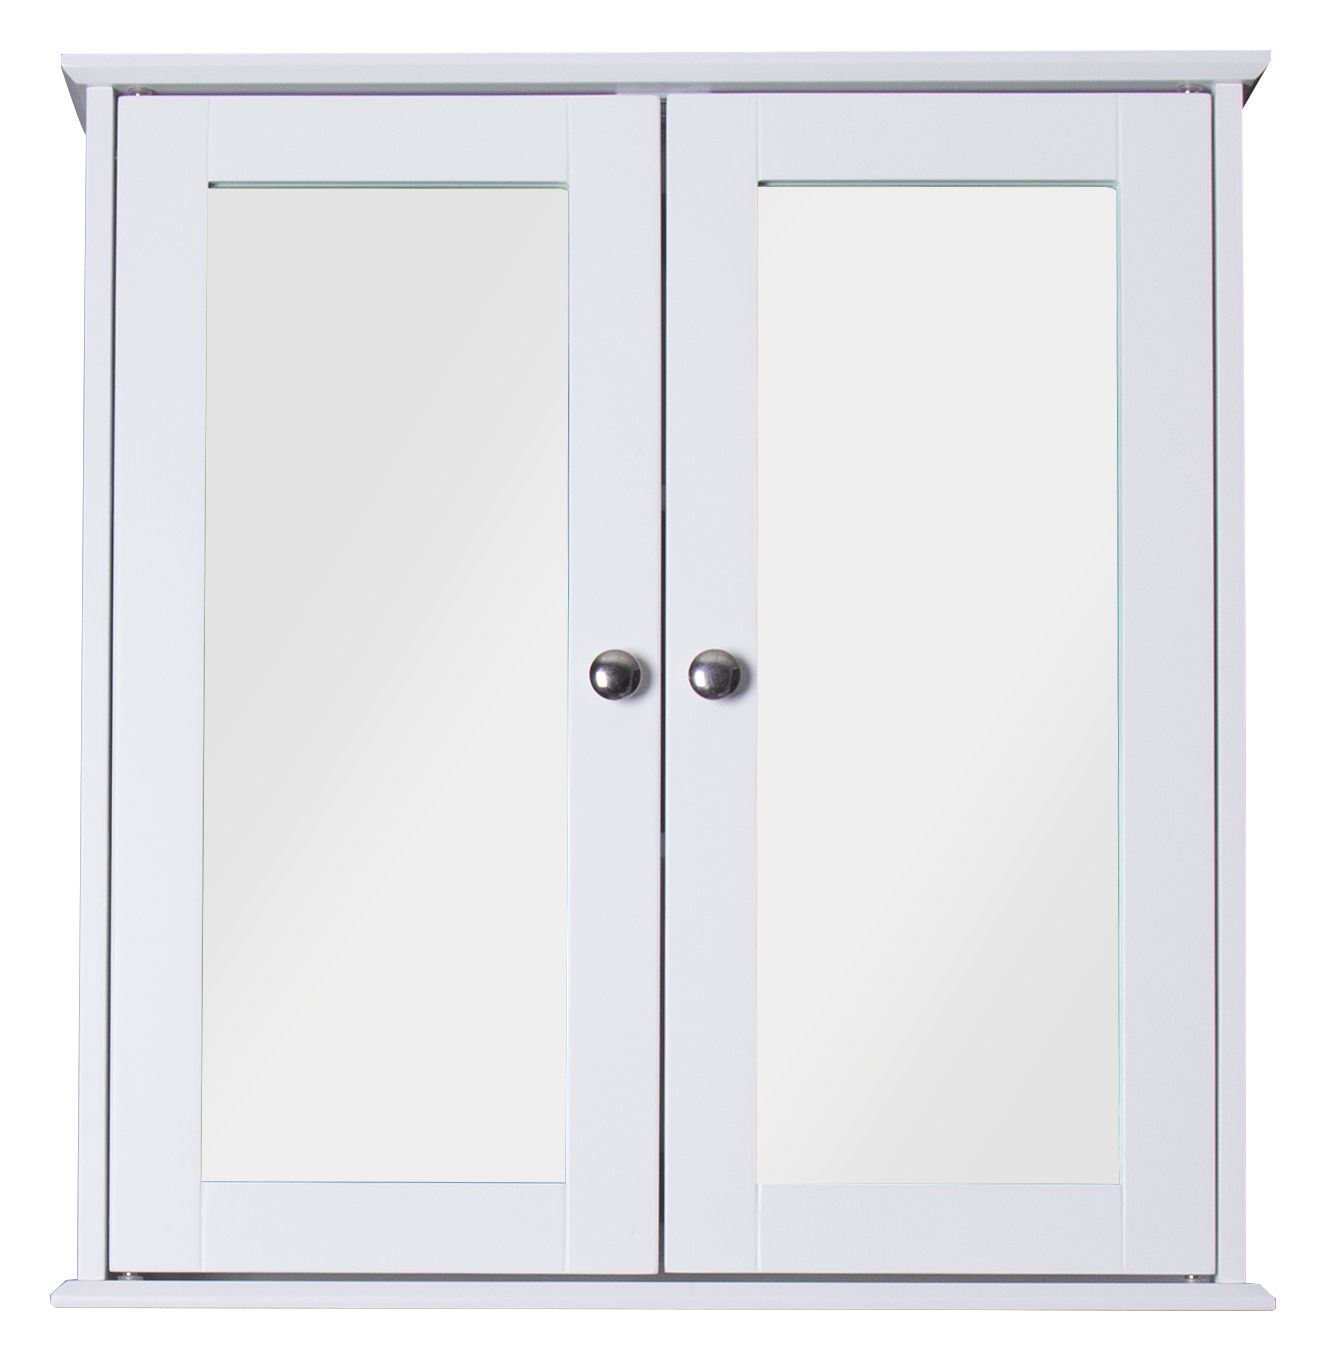 Croydex Ashby Wooden Double Door Bathroom Cabinet - 580 x 560mm